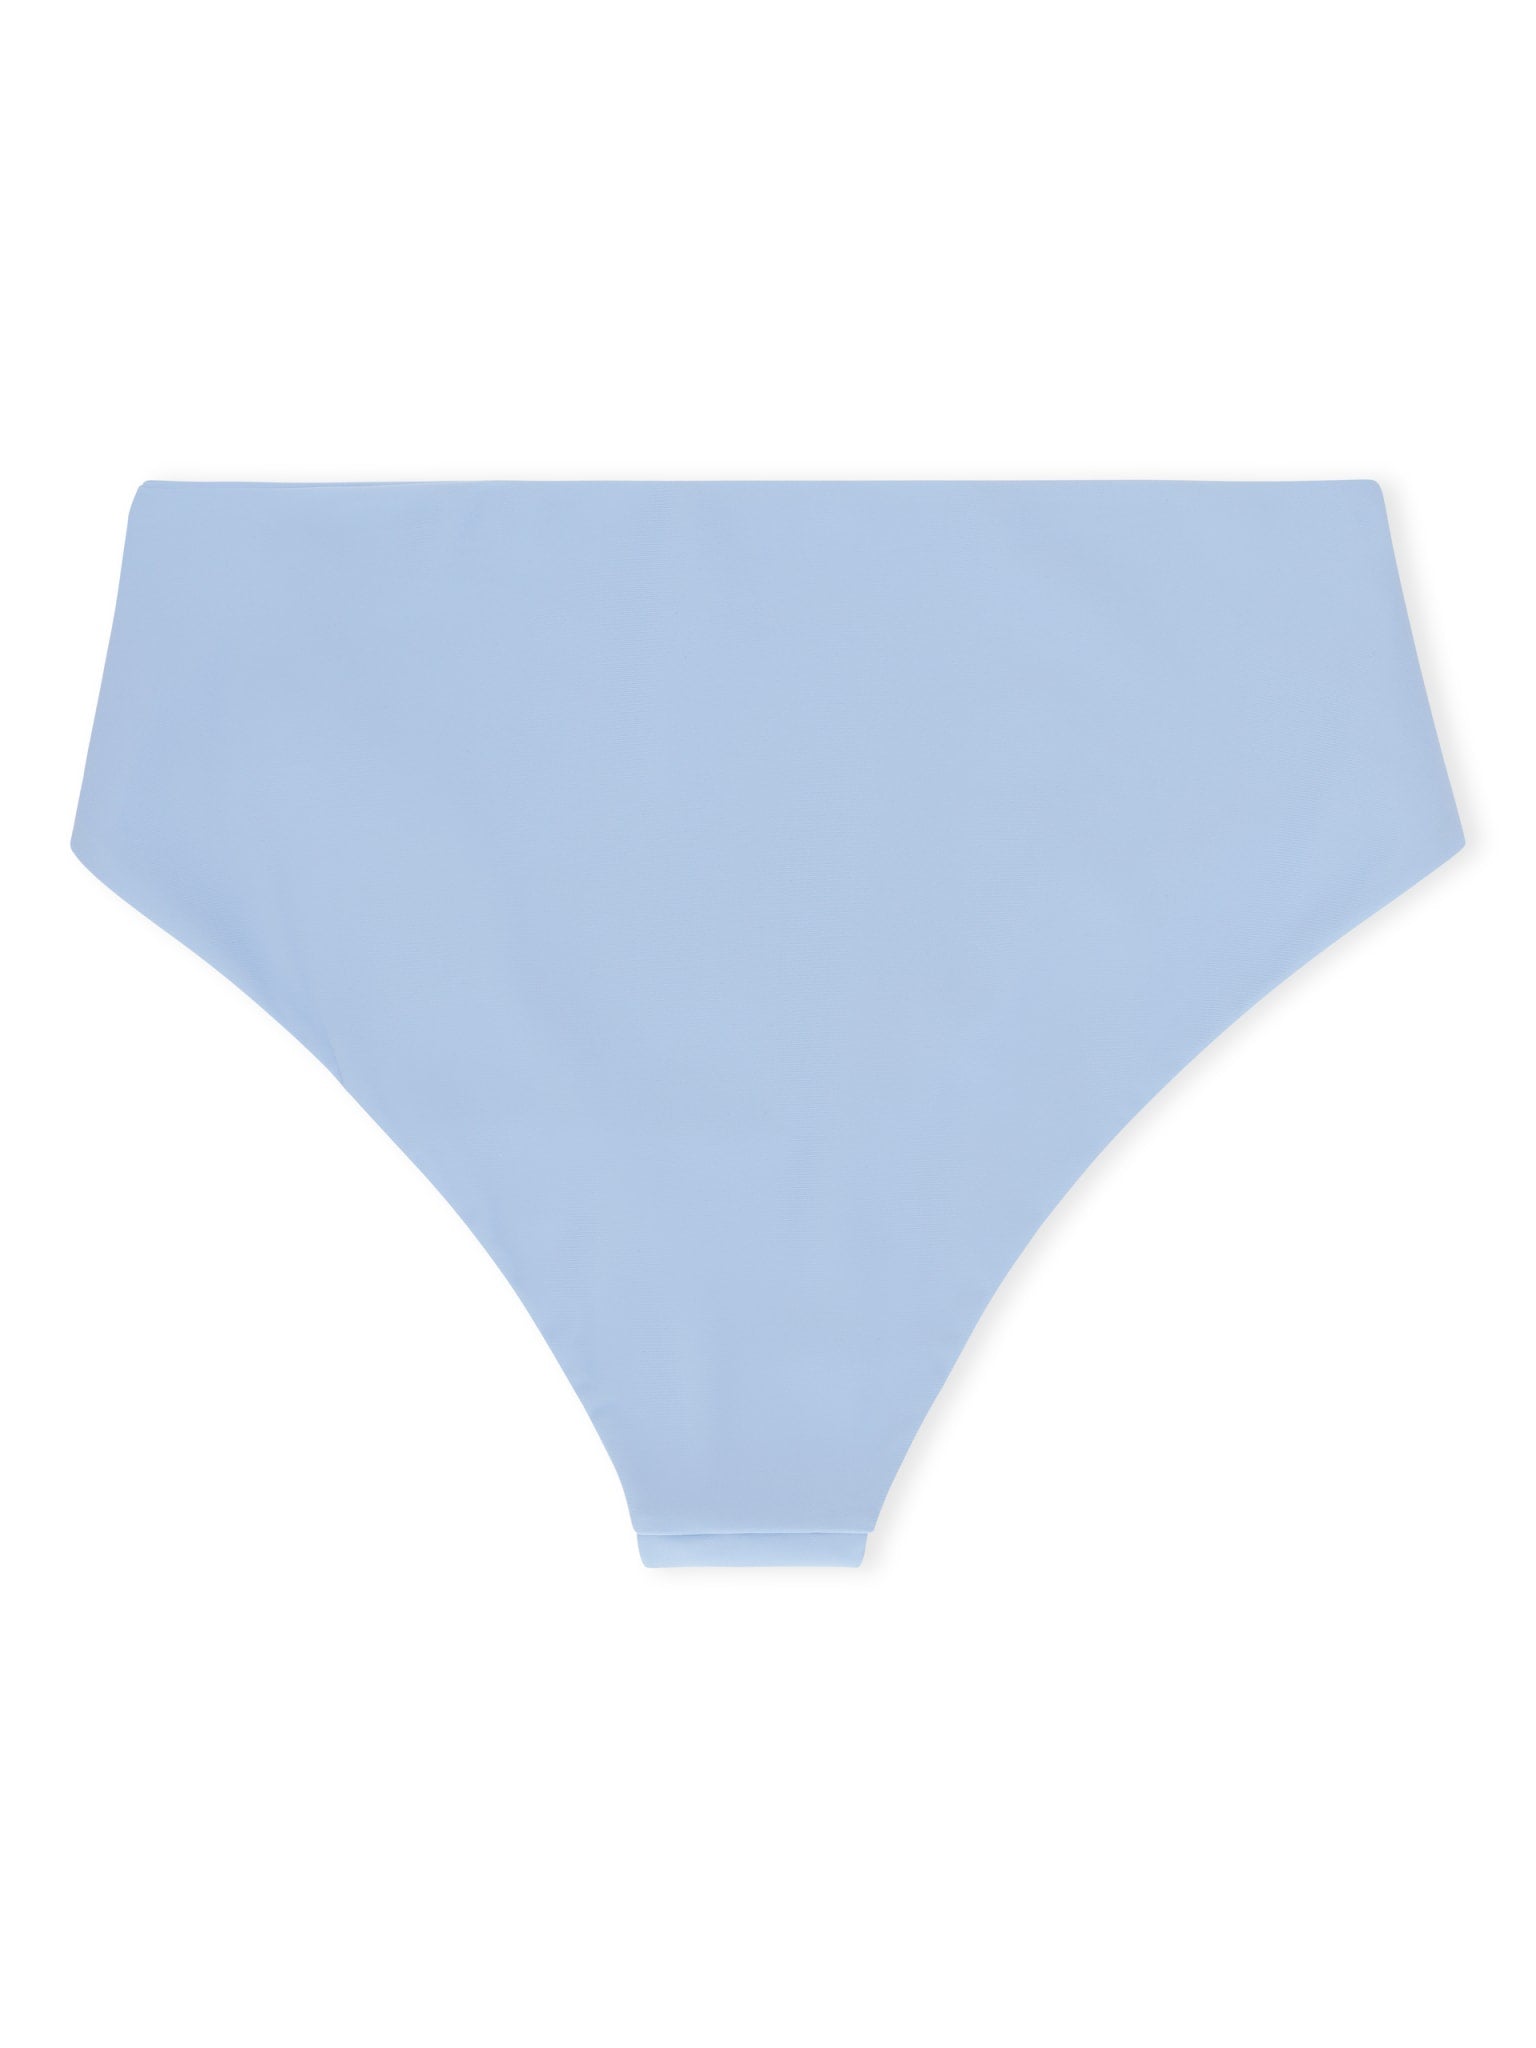 Ubud high-waist bikini bottom - Clear